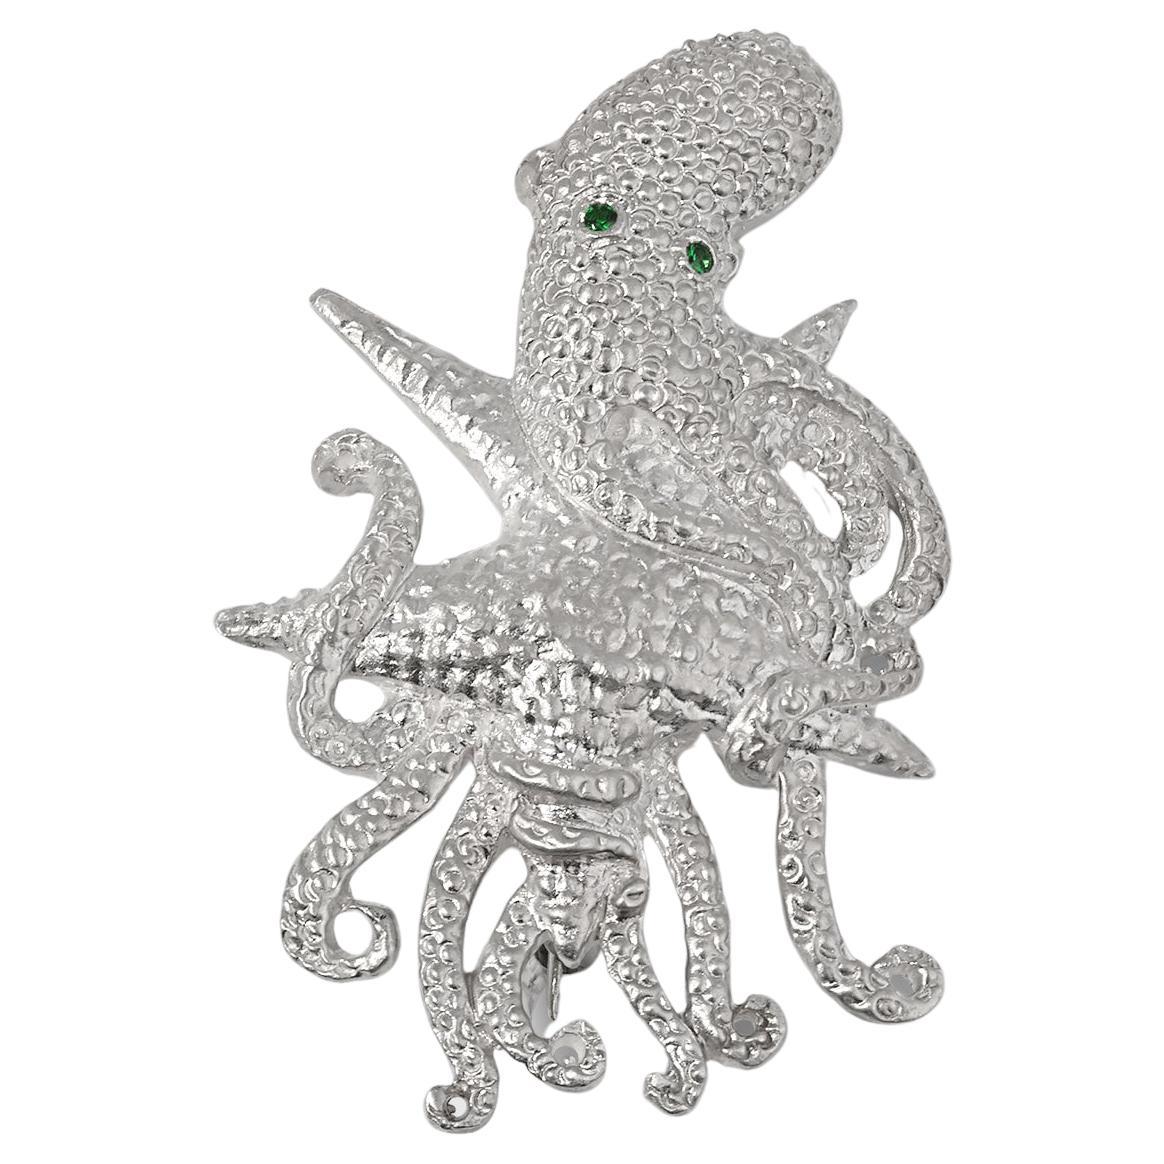 Atemberaubende detaillierte Octopus-Brosche aus Sterling mit leuchtend grünen Tsavorit-Augen